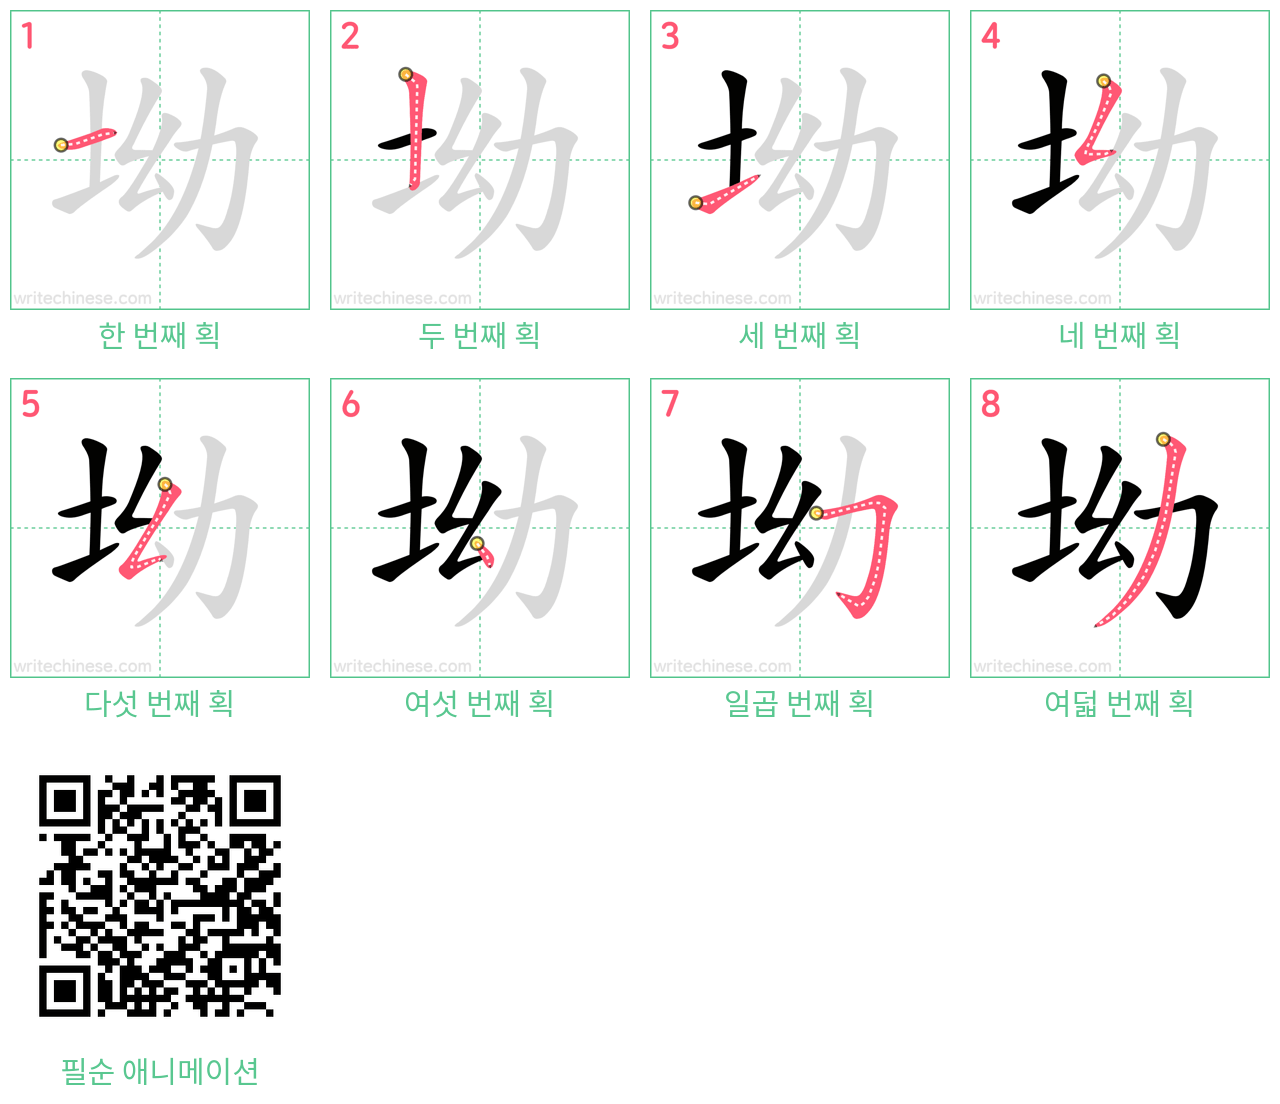 坳 step-by-step stroke order diagrams